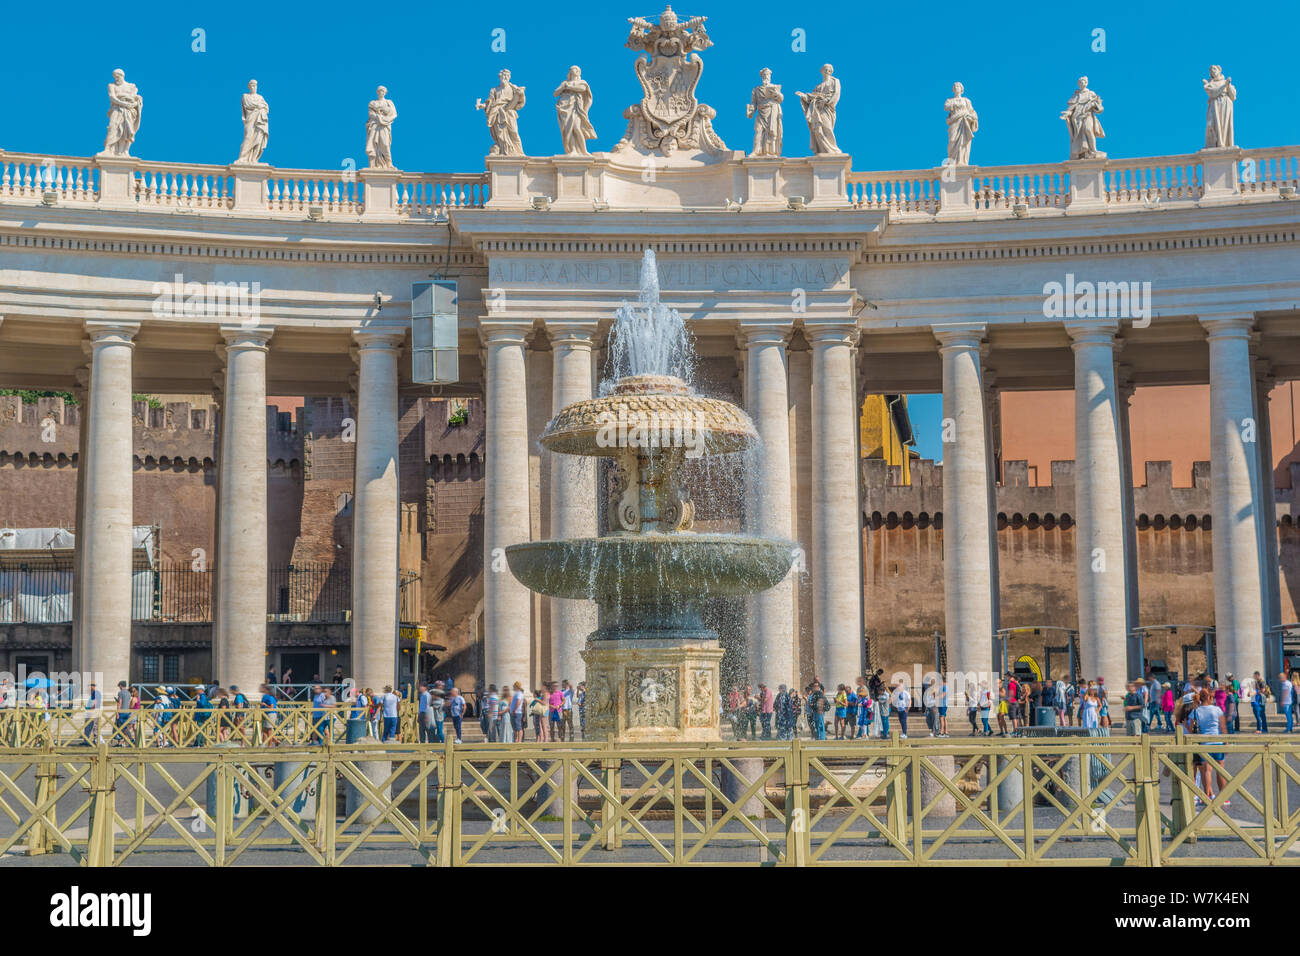 Bernini's Fountain and the Doric columns in the Vatican Stock Photo